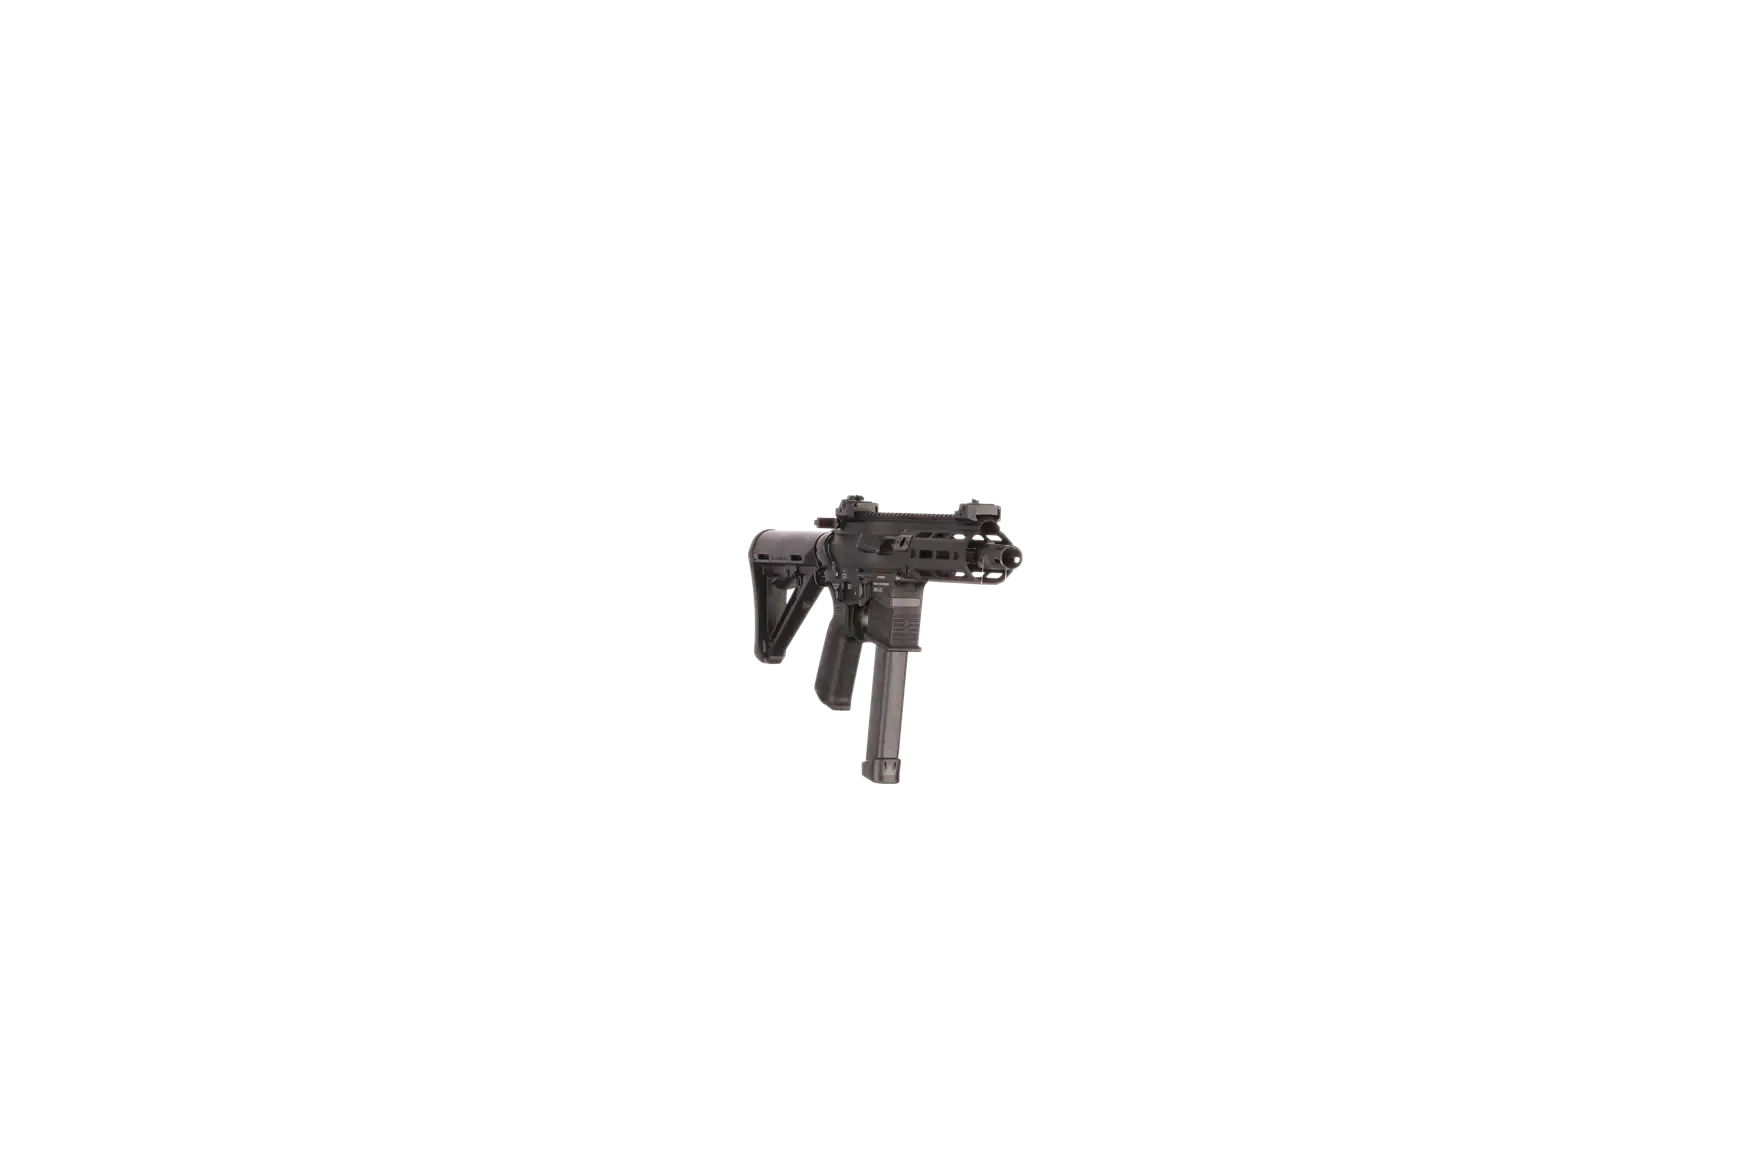 Náhledový obrázek pušky V-AR 9mm luger SPINVIEW 1 R14